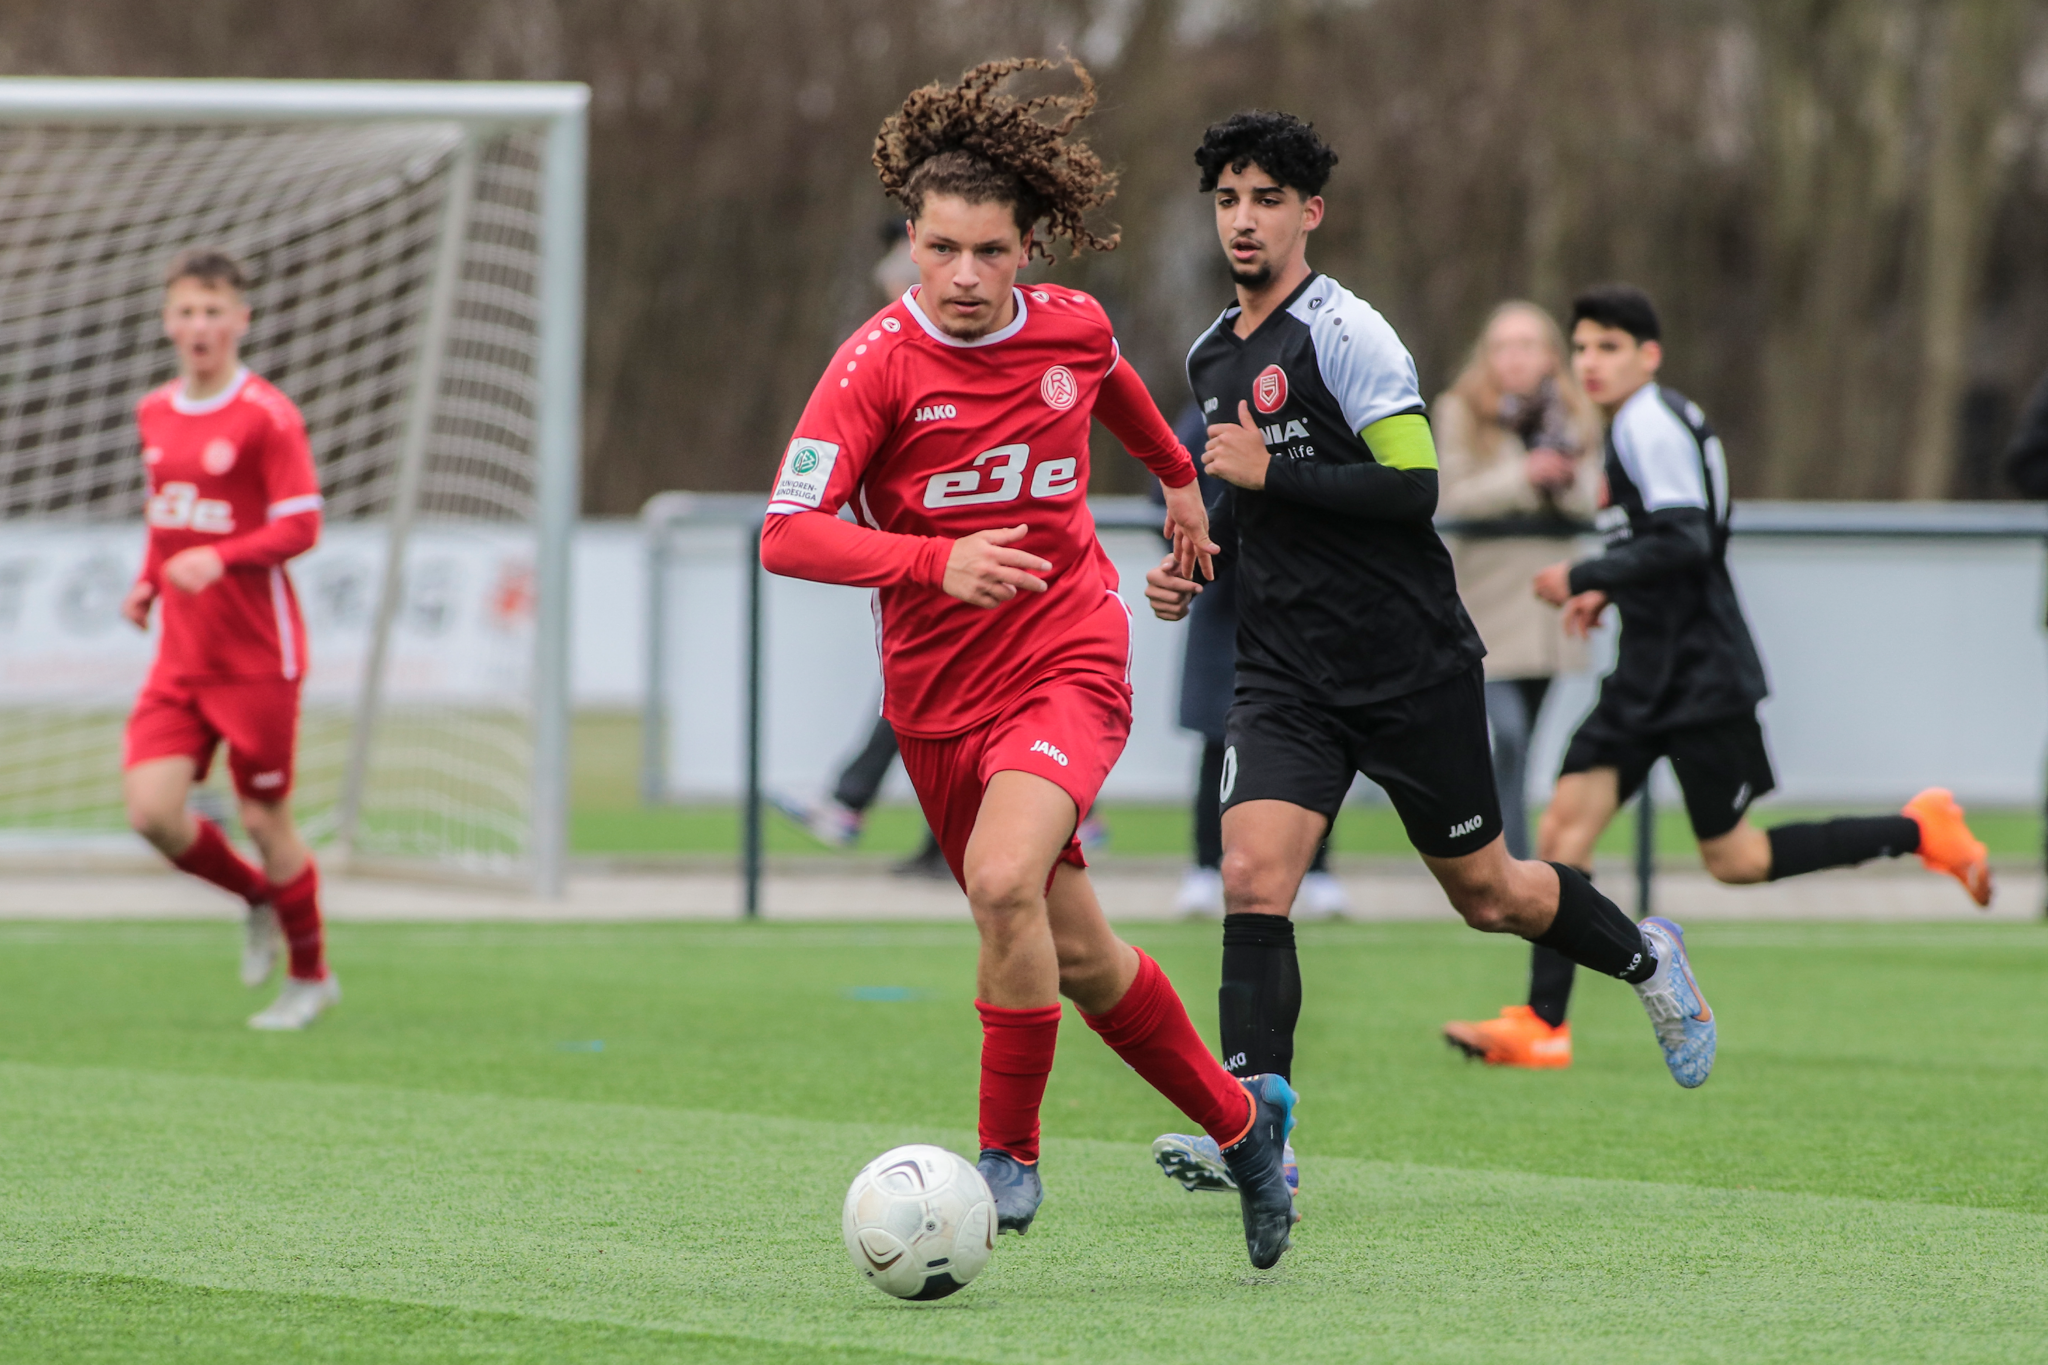 Fokussiert ins letzte Bundesliga-Spiel: Rot-Weiss Essens U17 kämpft um den Klassenerhalt. (Foto: Heidelberg)